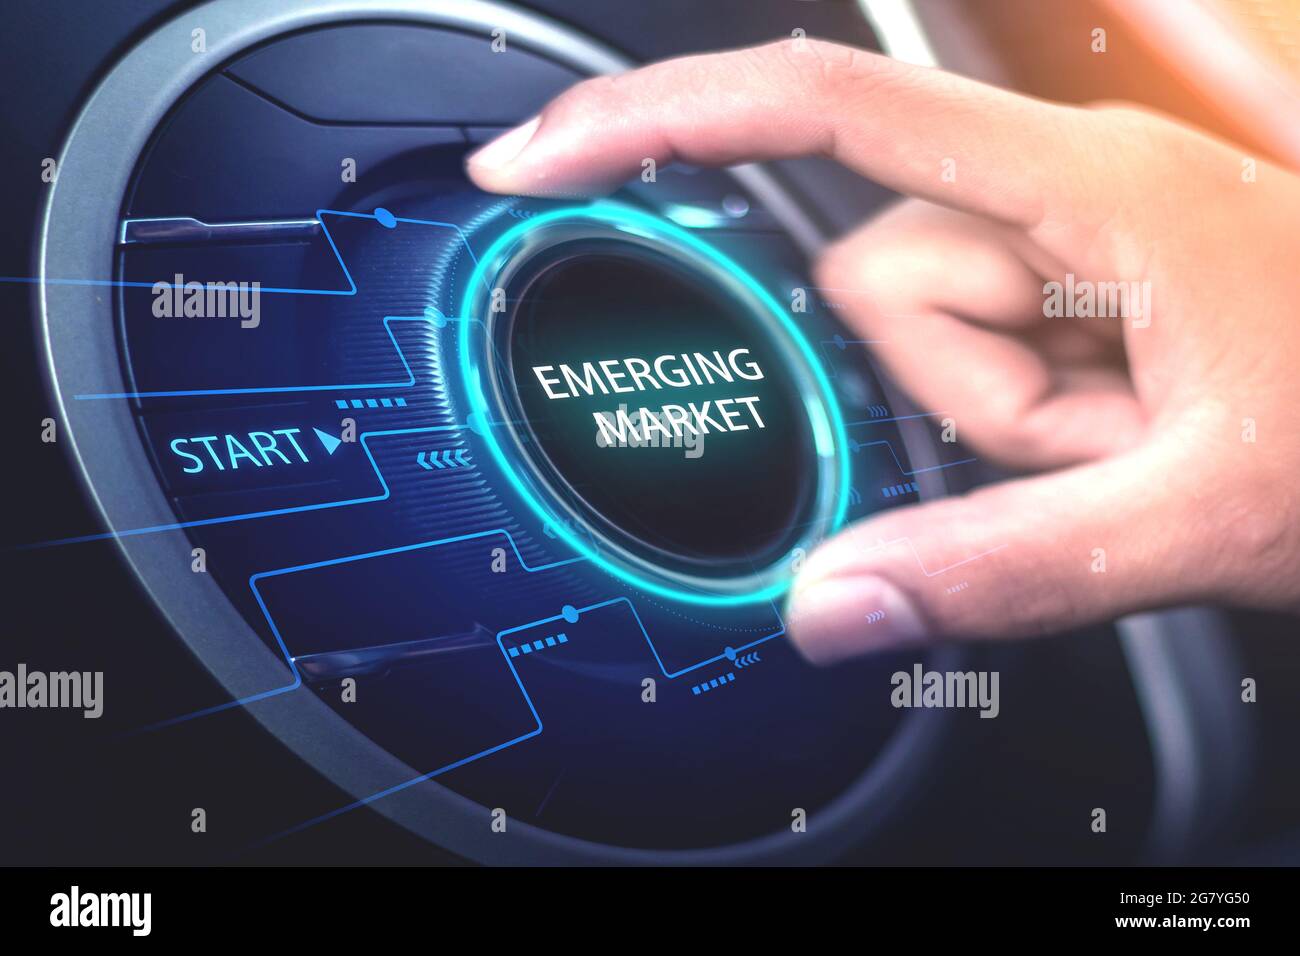 Emerging Market, Internet Technology Business Concept and Network EIN junger Geschäftsmann nutzt seine Hand, um einen Tonumschalter zu drehen, der als Emerging Markets bezeichnet wird. Stockfoto